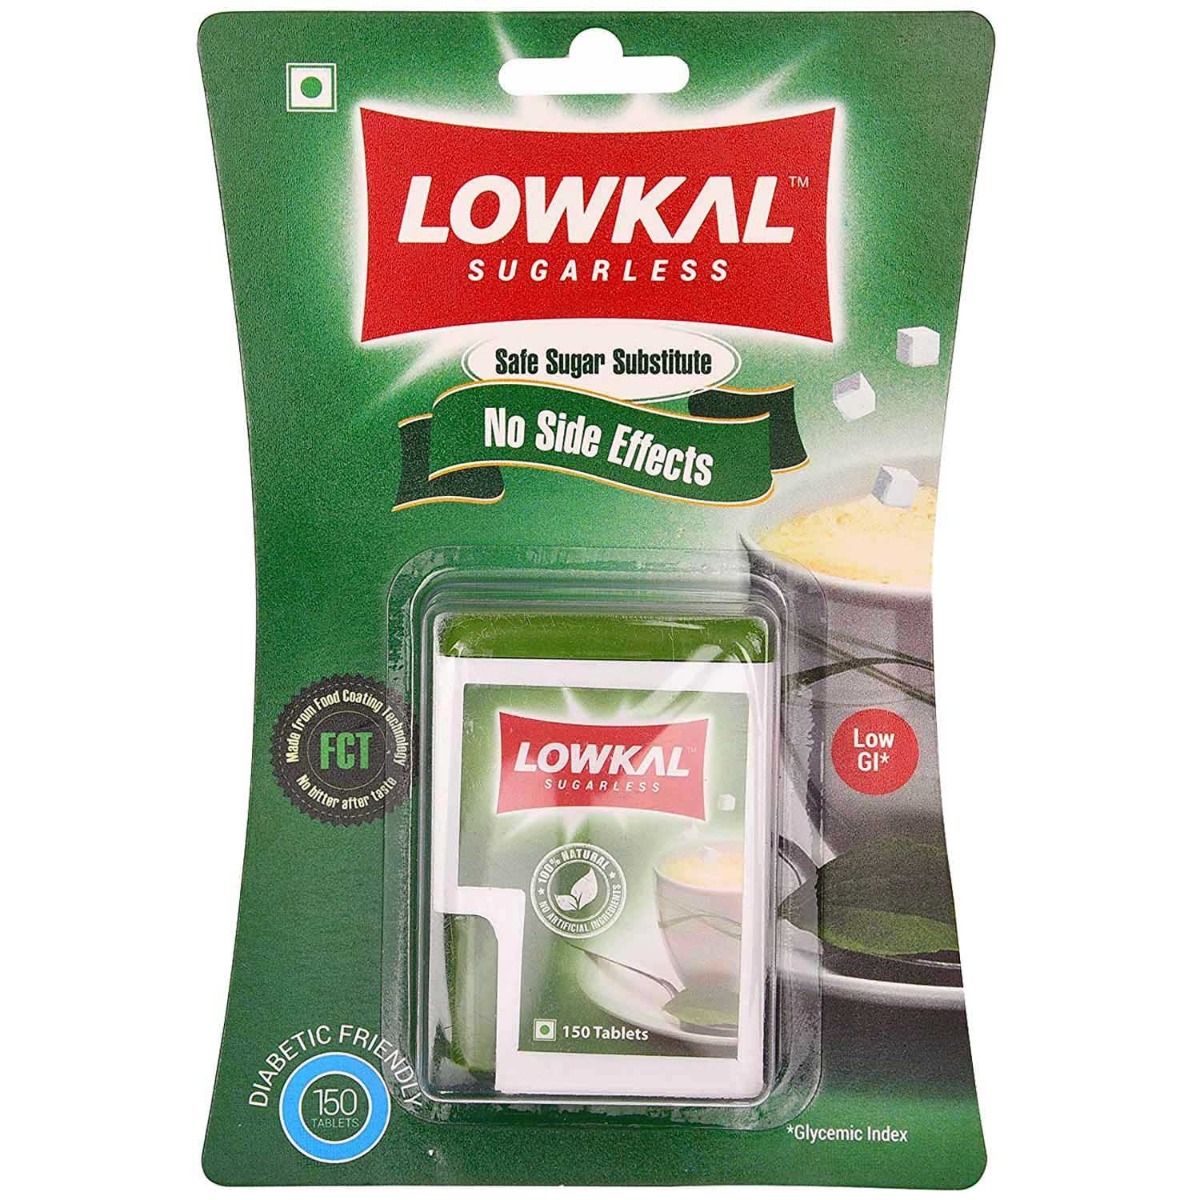 Buy Lowkal Sugarless, 150 Tablets Online